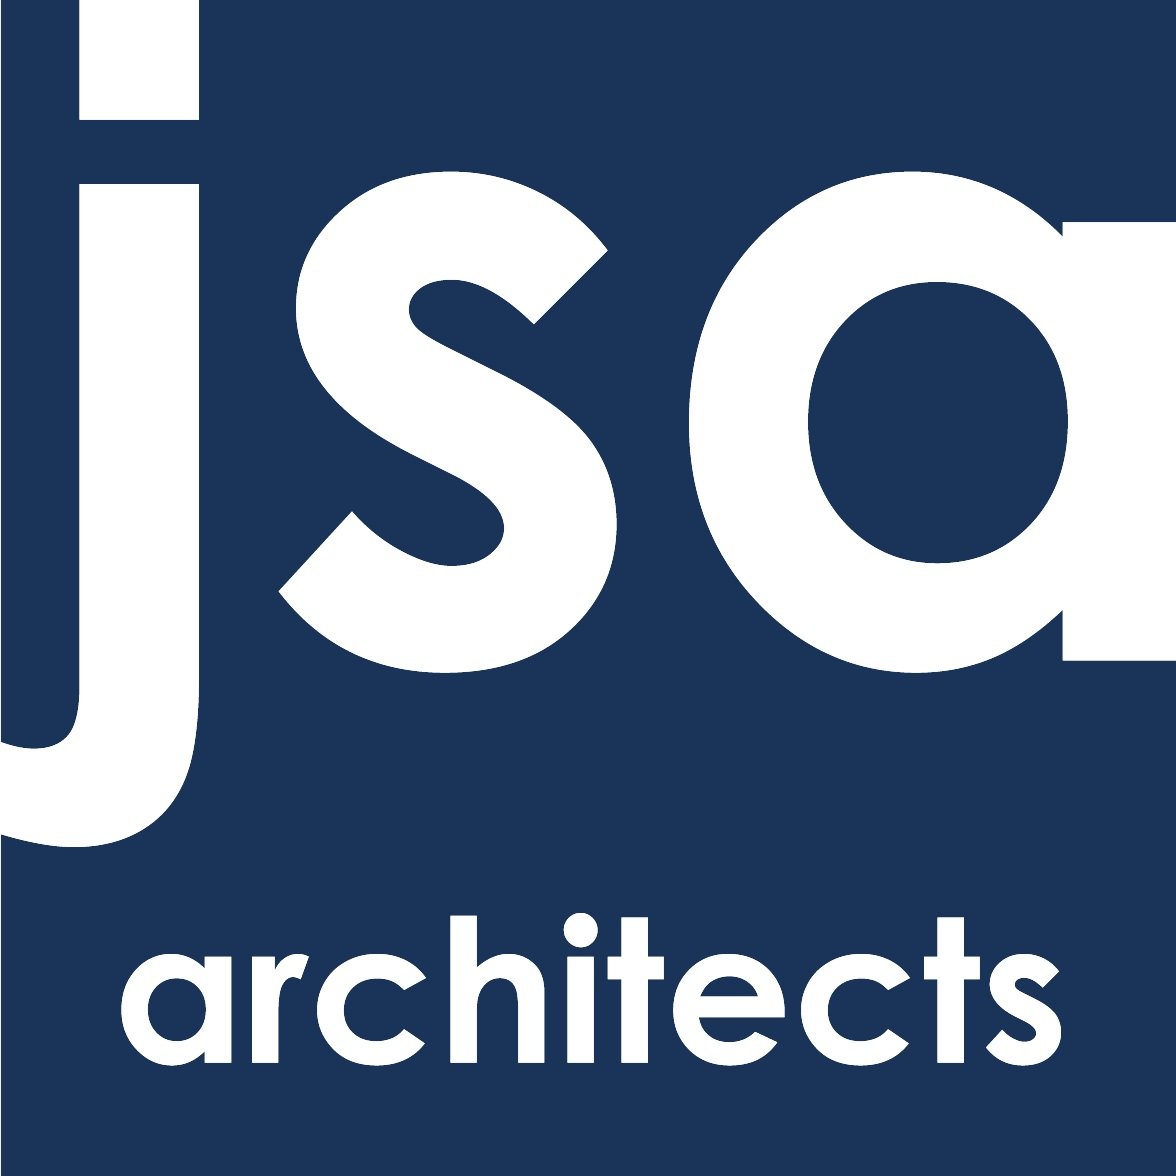 JSA ARCHITECTS